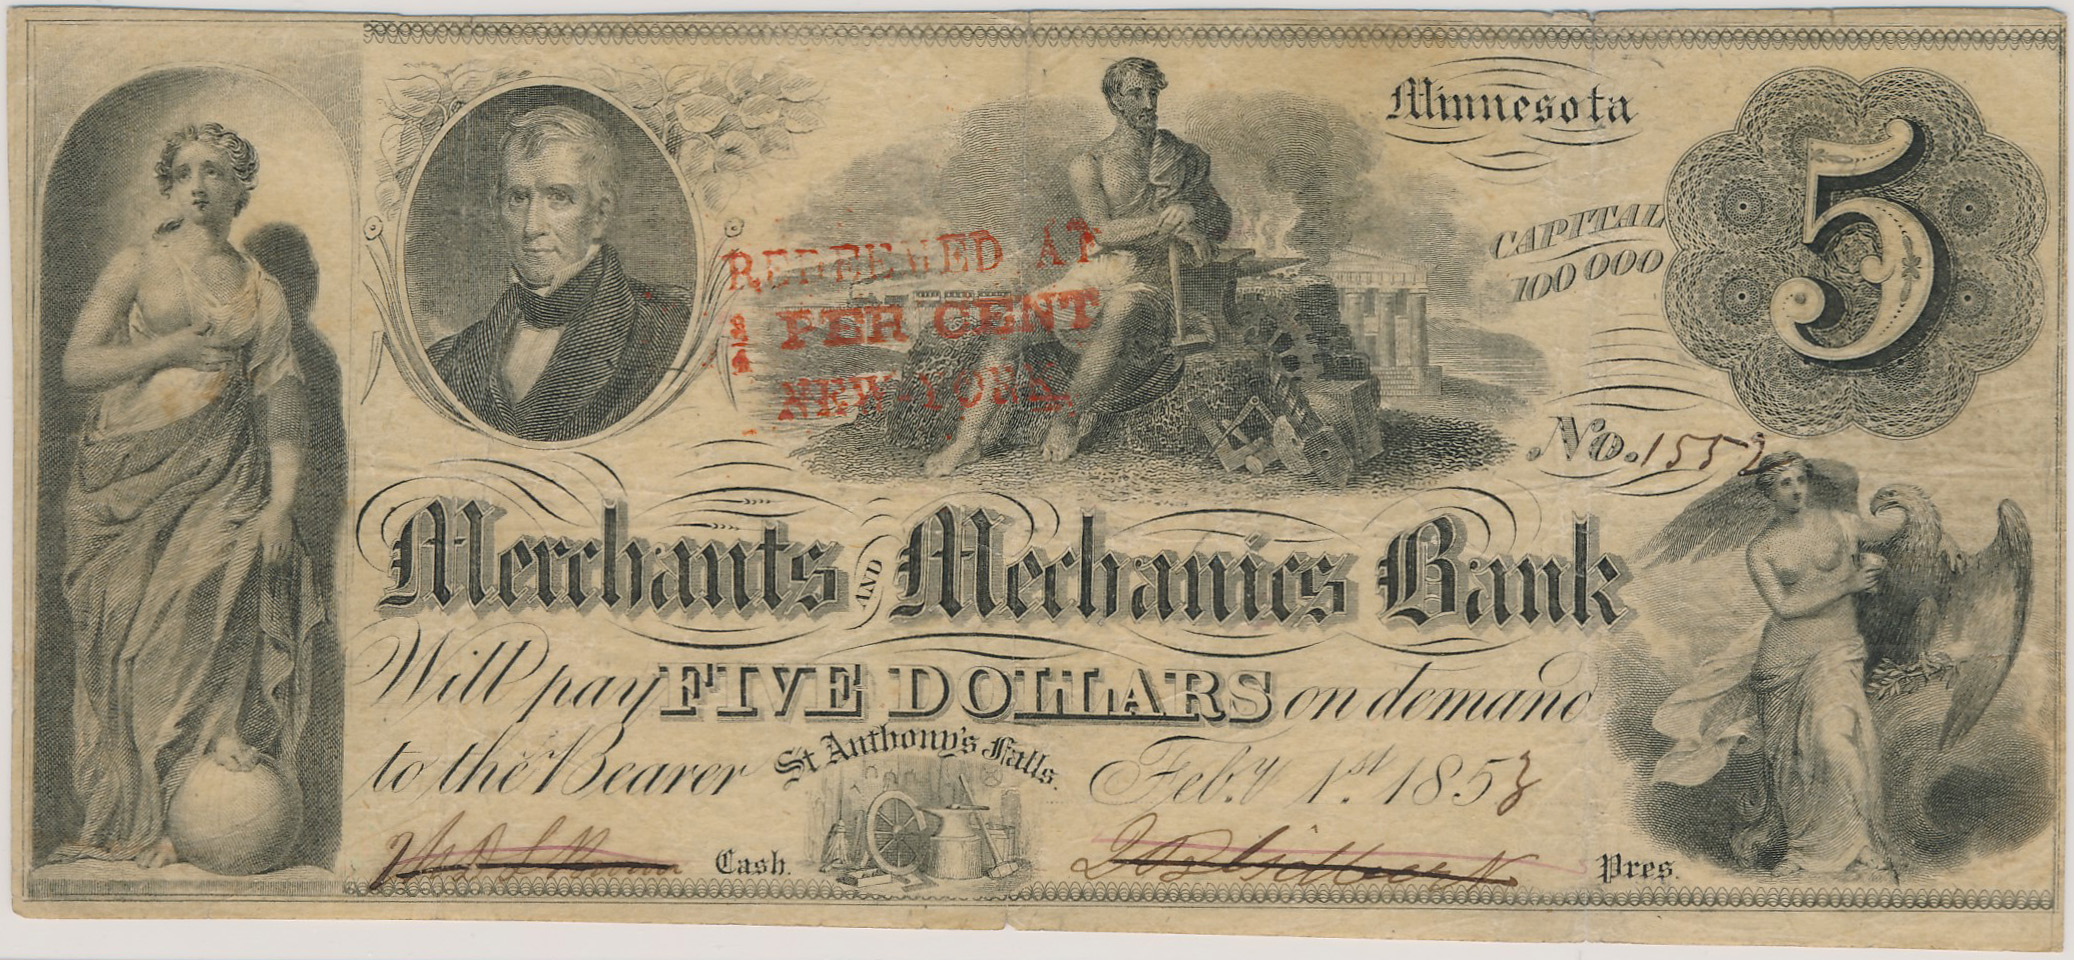 Merchants and Mechanics Bank